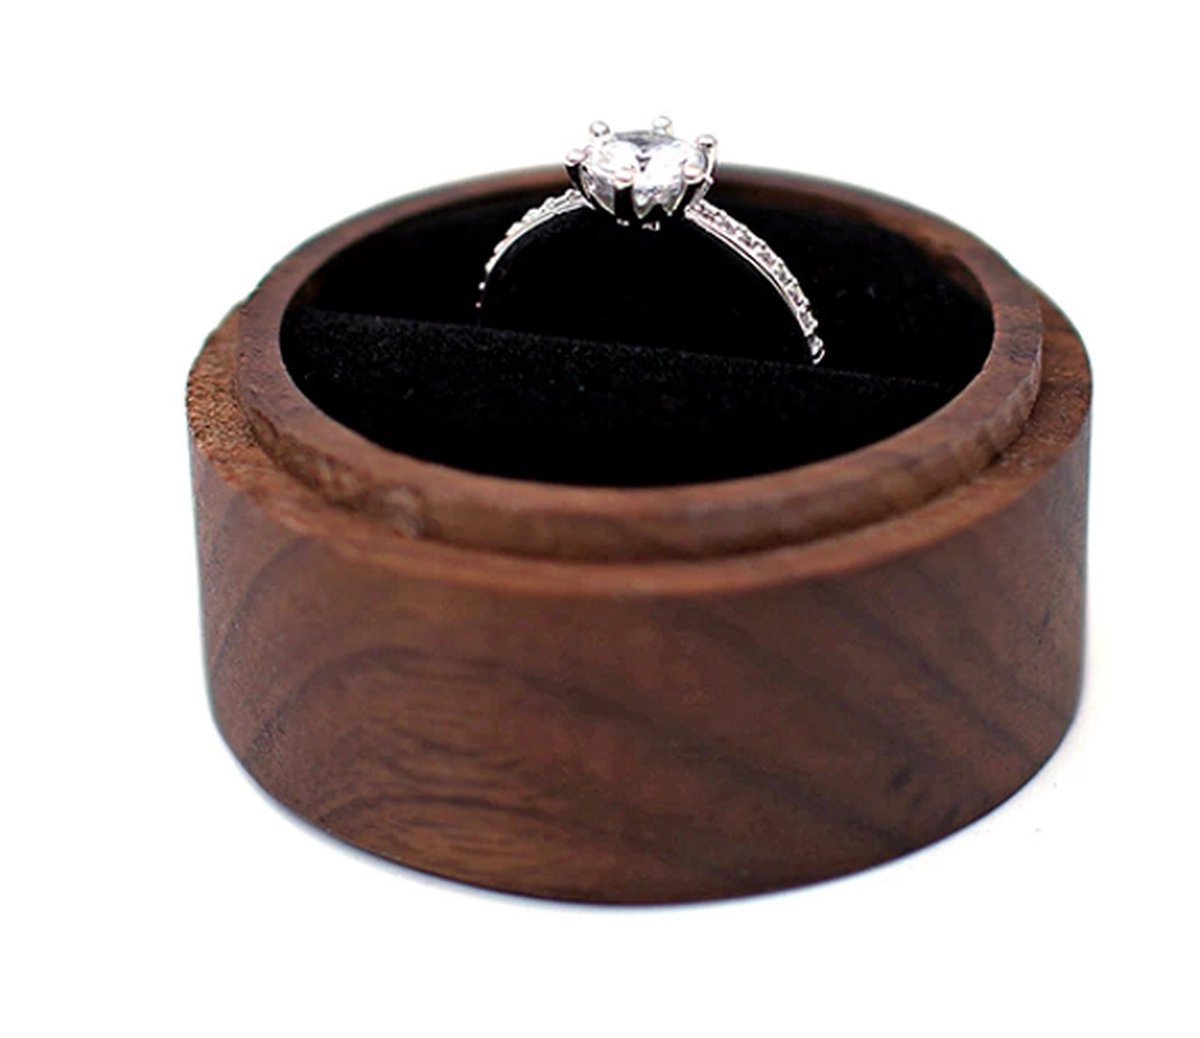 Ringdoosje hout gepersonaliseerd met uw eigen tekst! - aanzoek - bruiloft - verloving - huwelijksaanzoek - liefde - ring